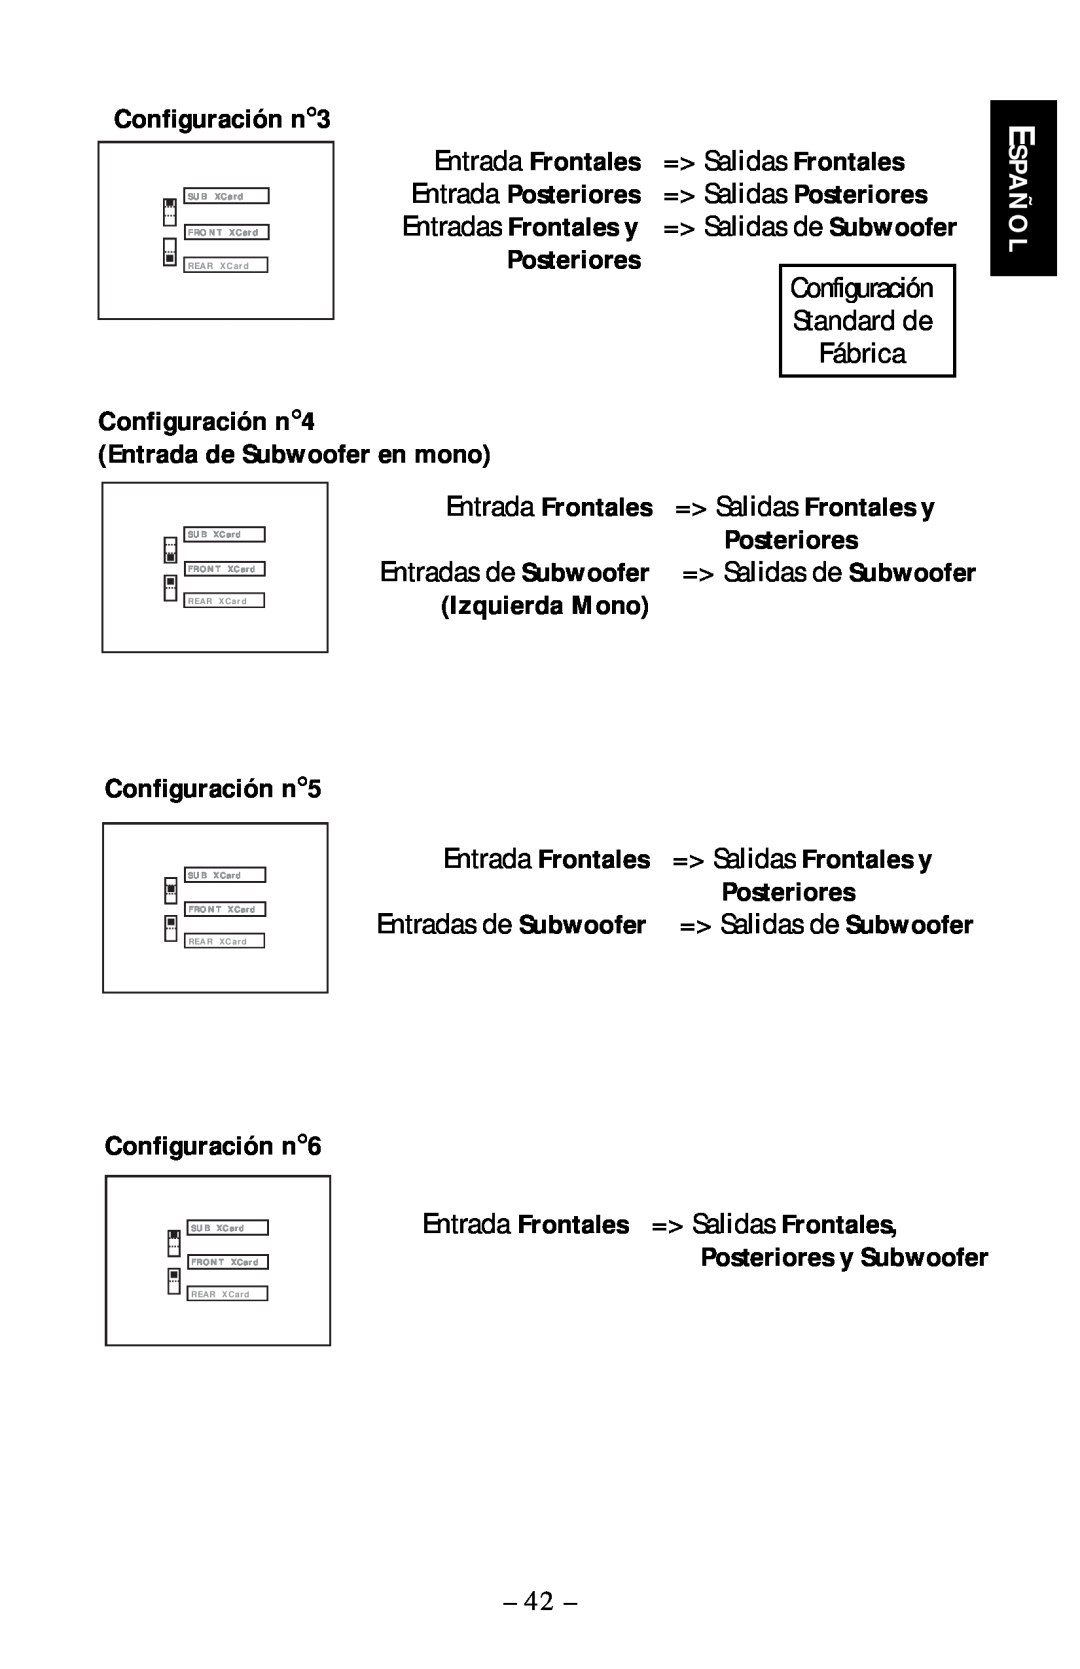 Rockford Fosgate 5.3x manual Configuración n3, Posteriores, Español, Configuración n4 Entrada de Subwoofer en mono 